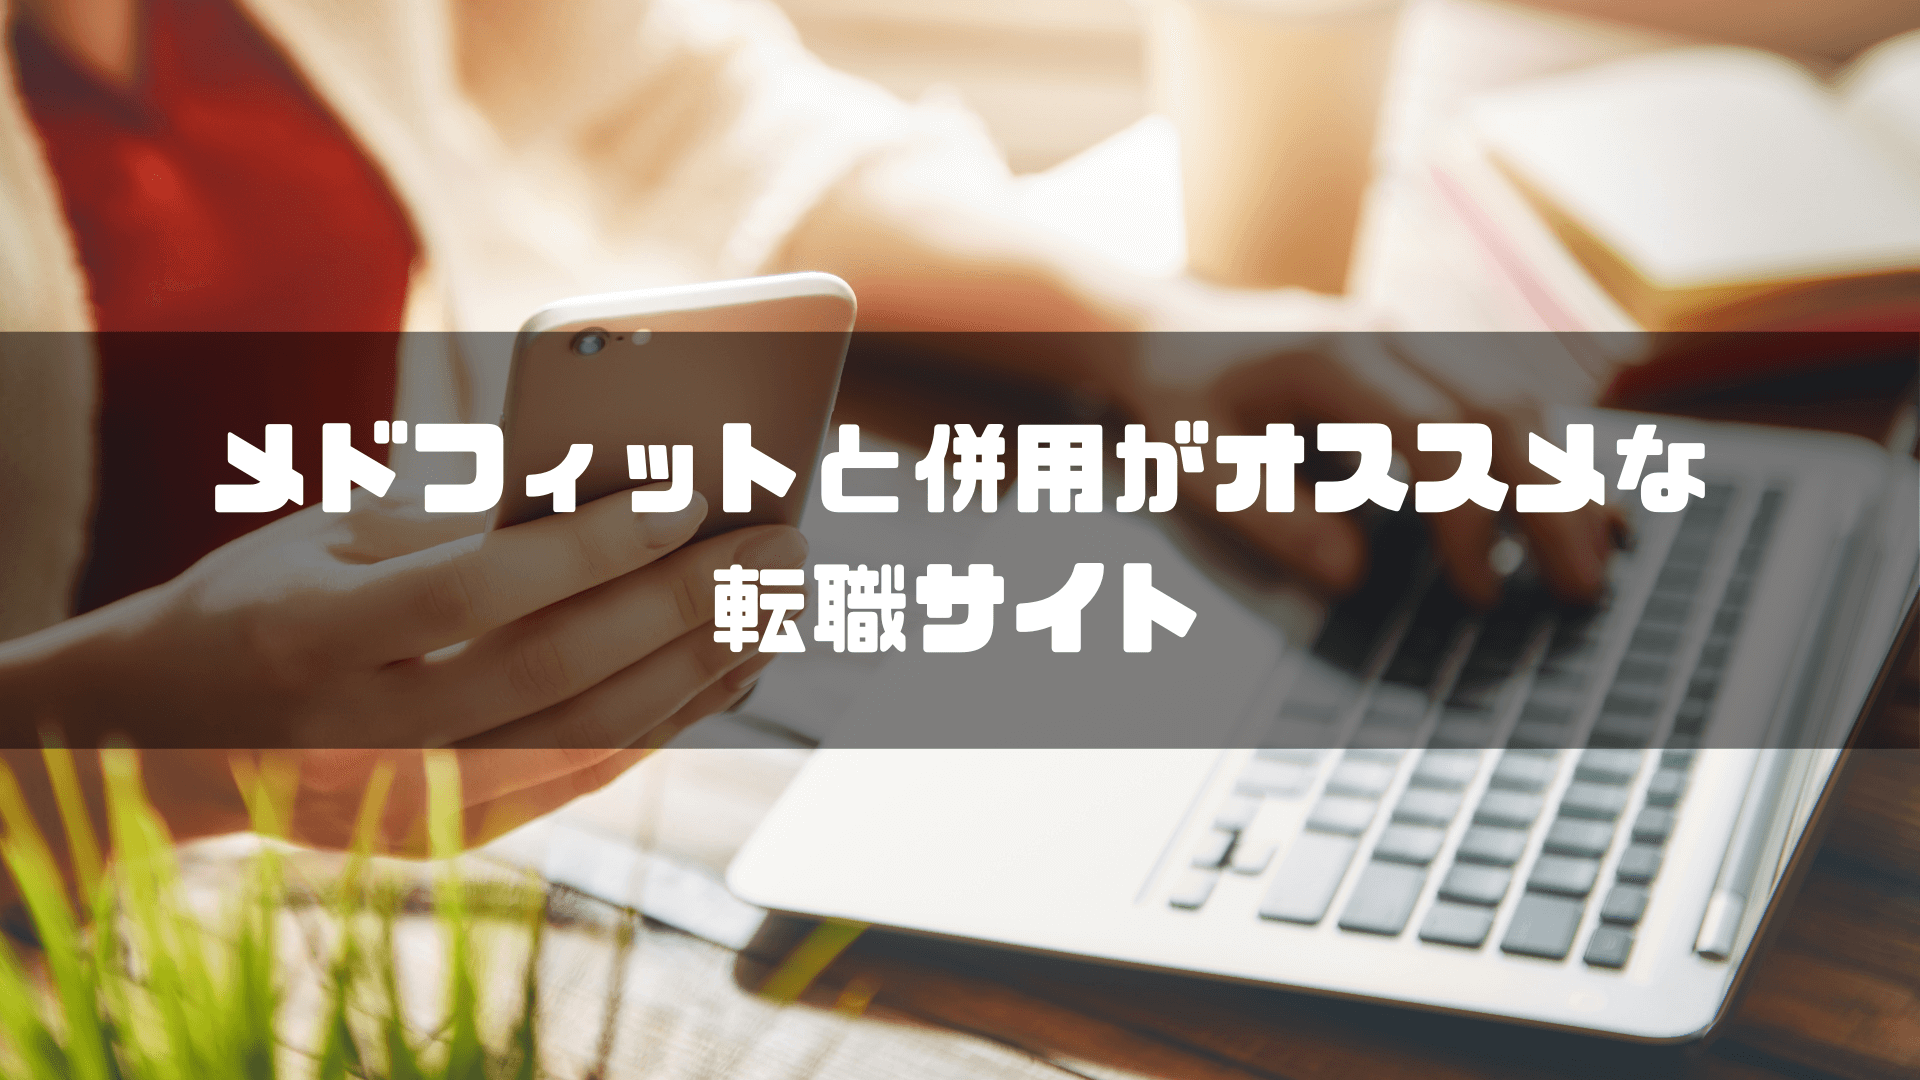 メドフィット_評判_併用おすすめ転職サイト